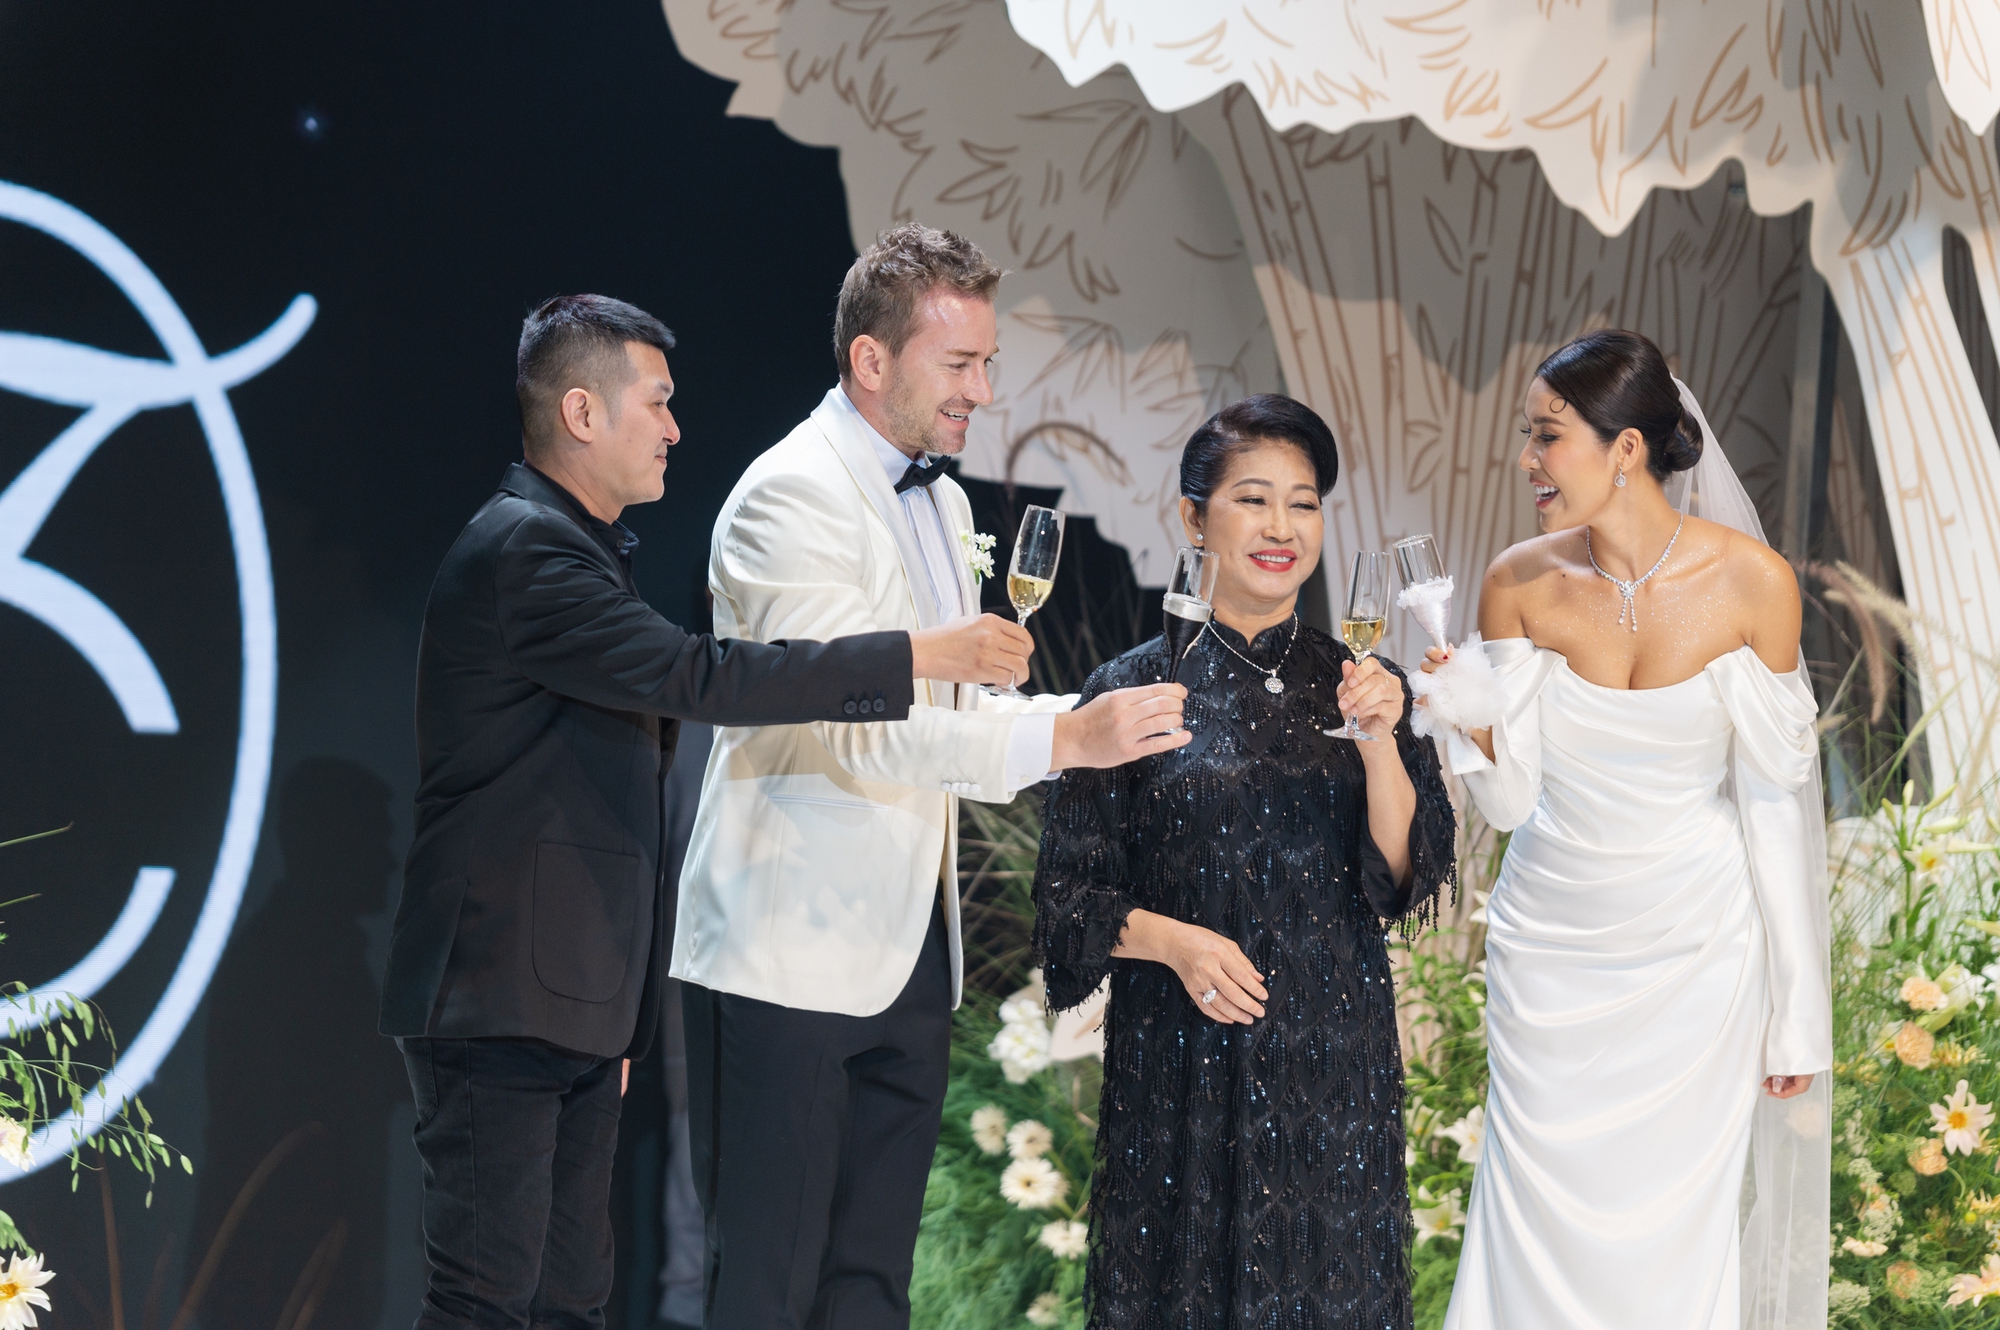 Toàn cảnh đám cưới Minh Tú: 3 bộ trang phục độc đáo, gắn hình ảnh bố lên hoa cưới- Ảnh 16.